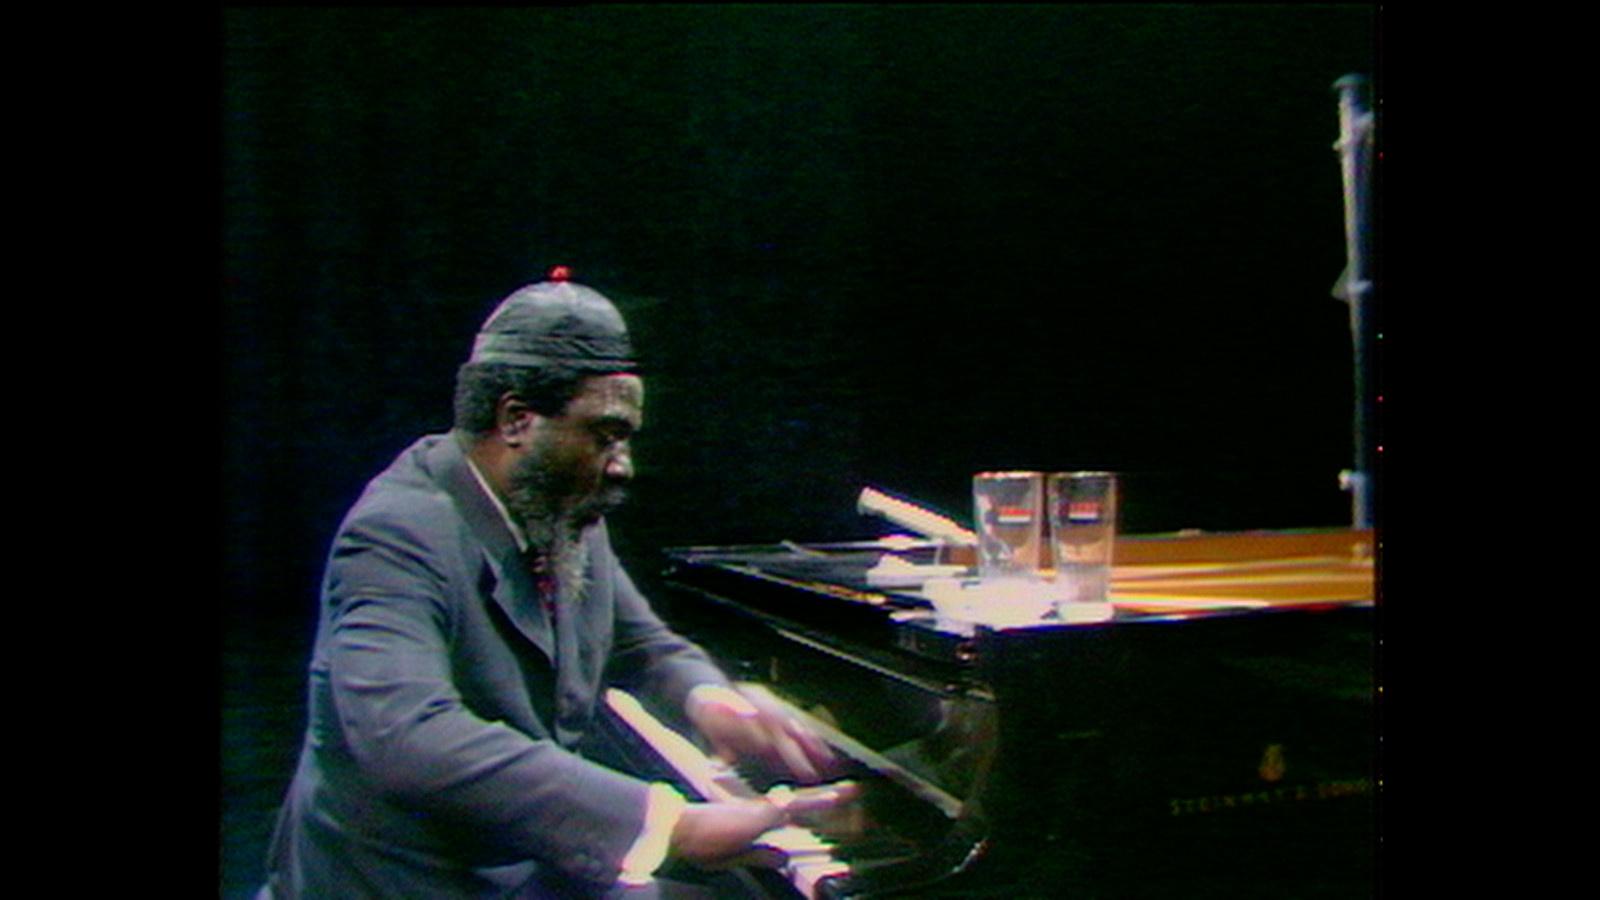 Soirée jazz / CONCERT : Tribute to Monk + FILM : Rewind and play d'A. Gomis - Cinéma le Royal